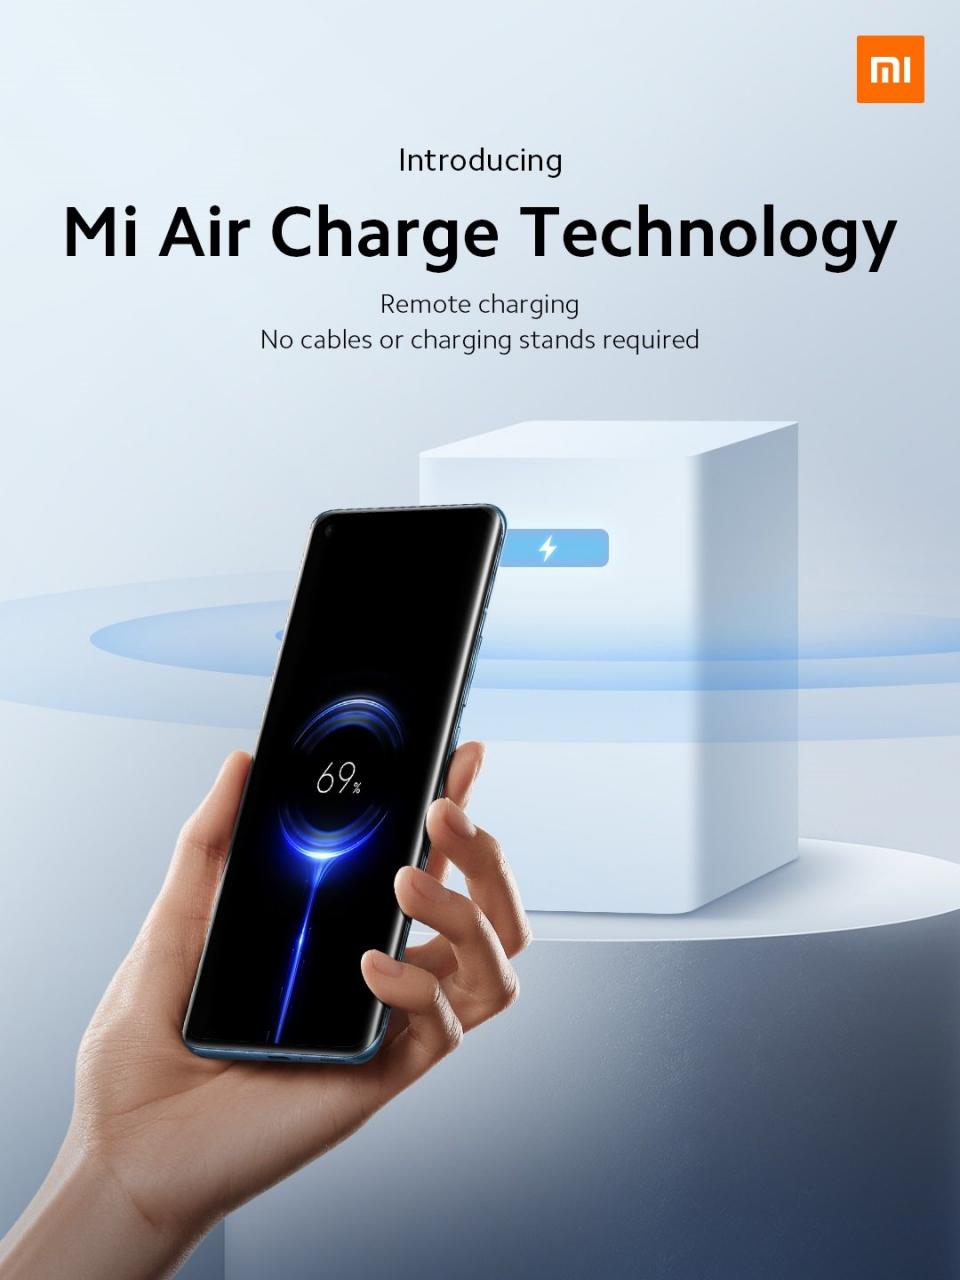 La tecnología Mi Air Charge de Xiaomi revoluciona el mercado